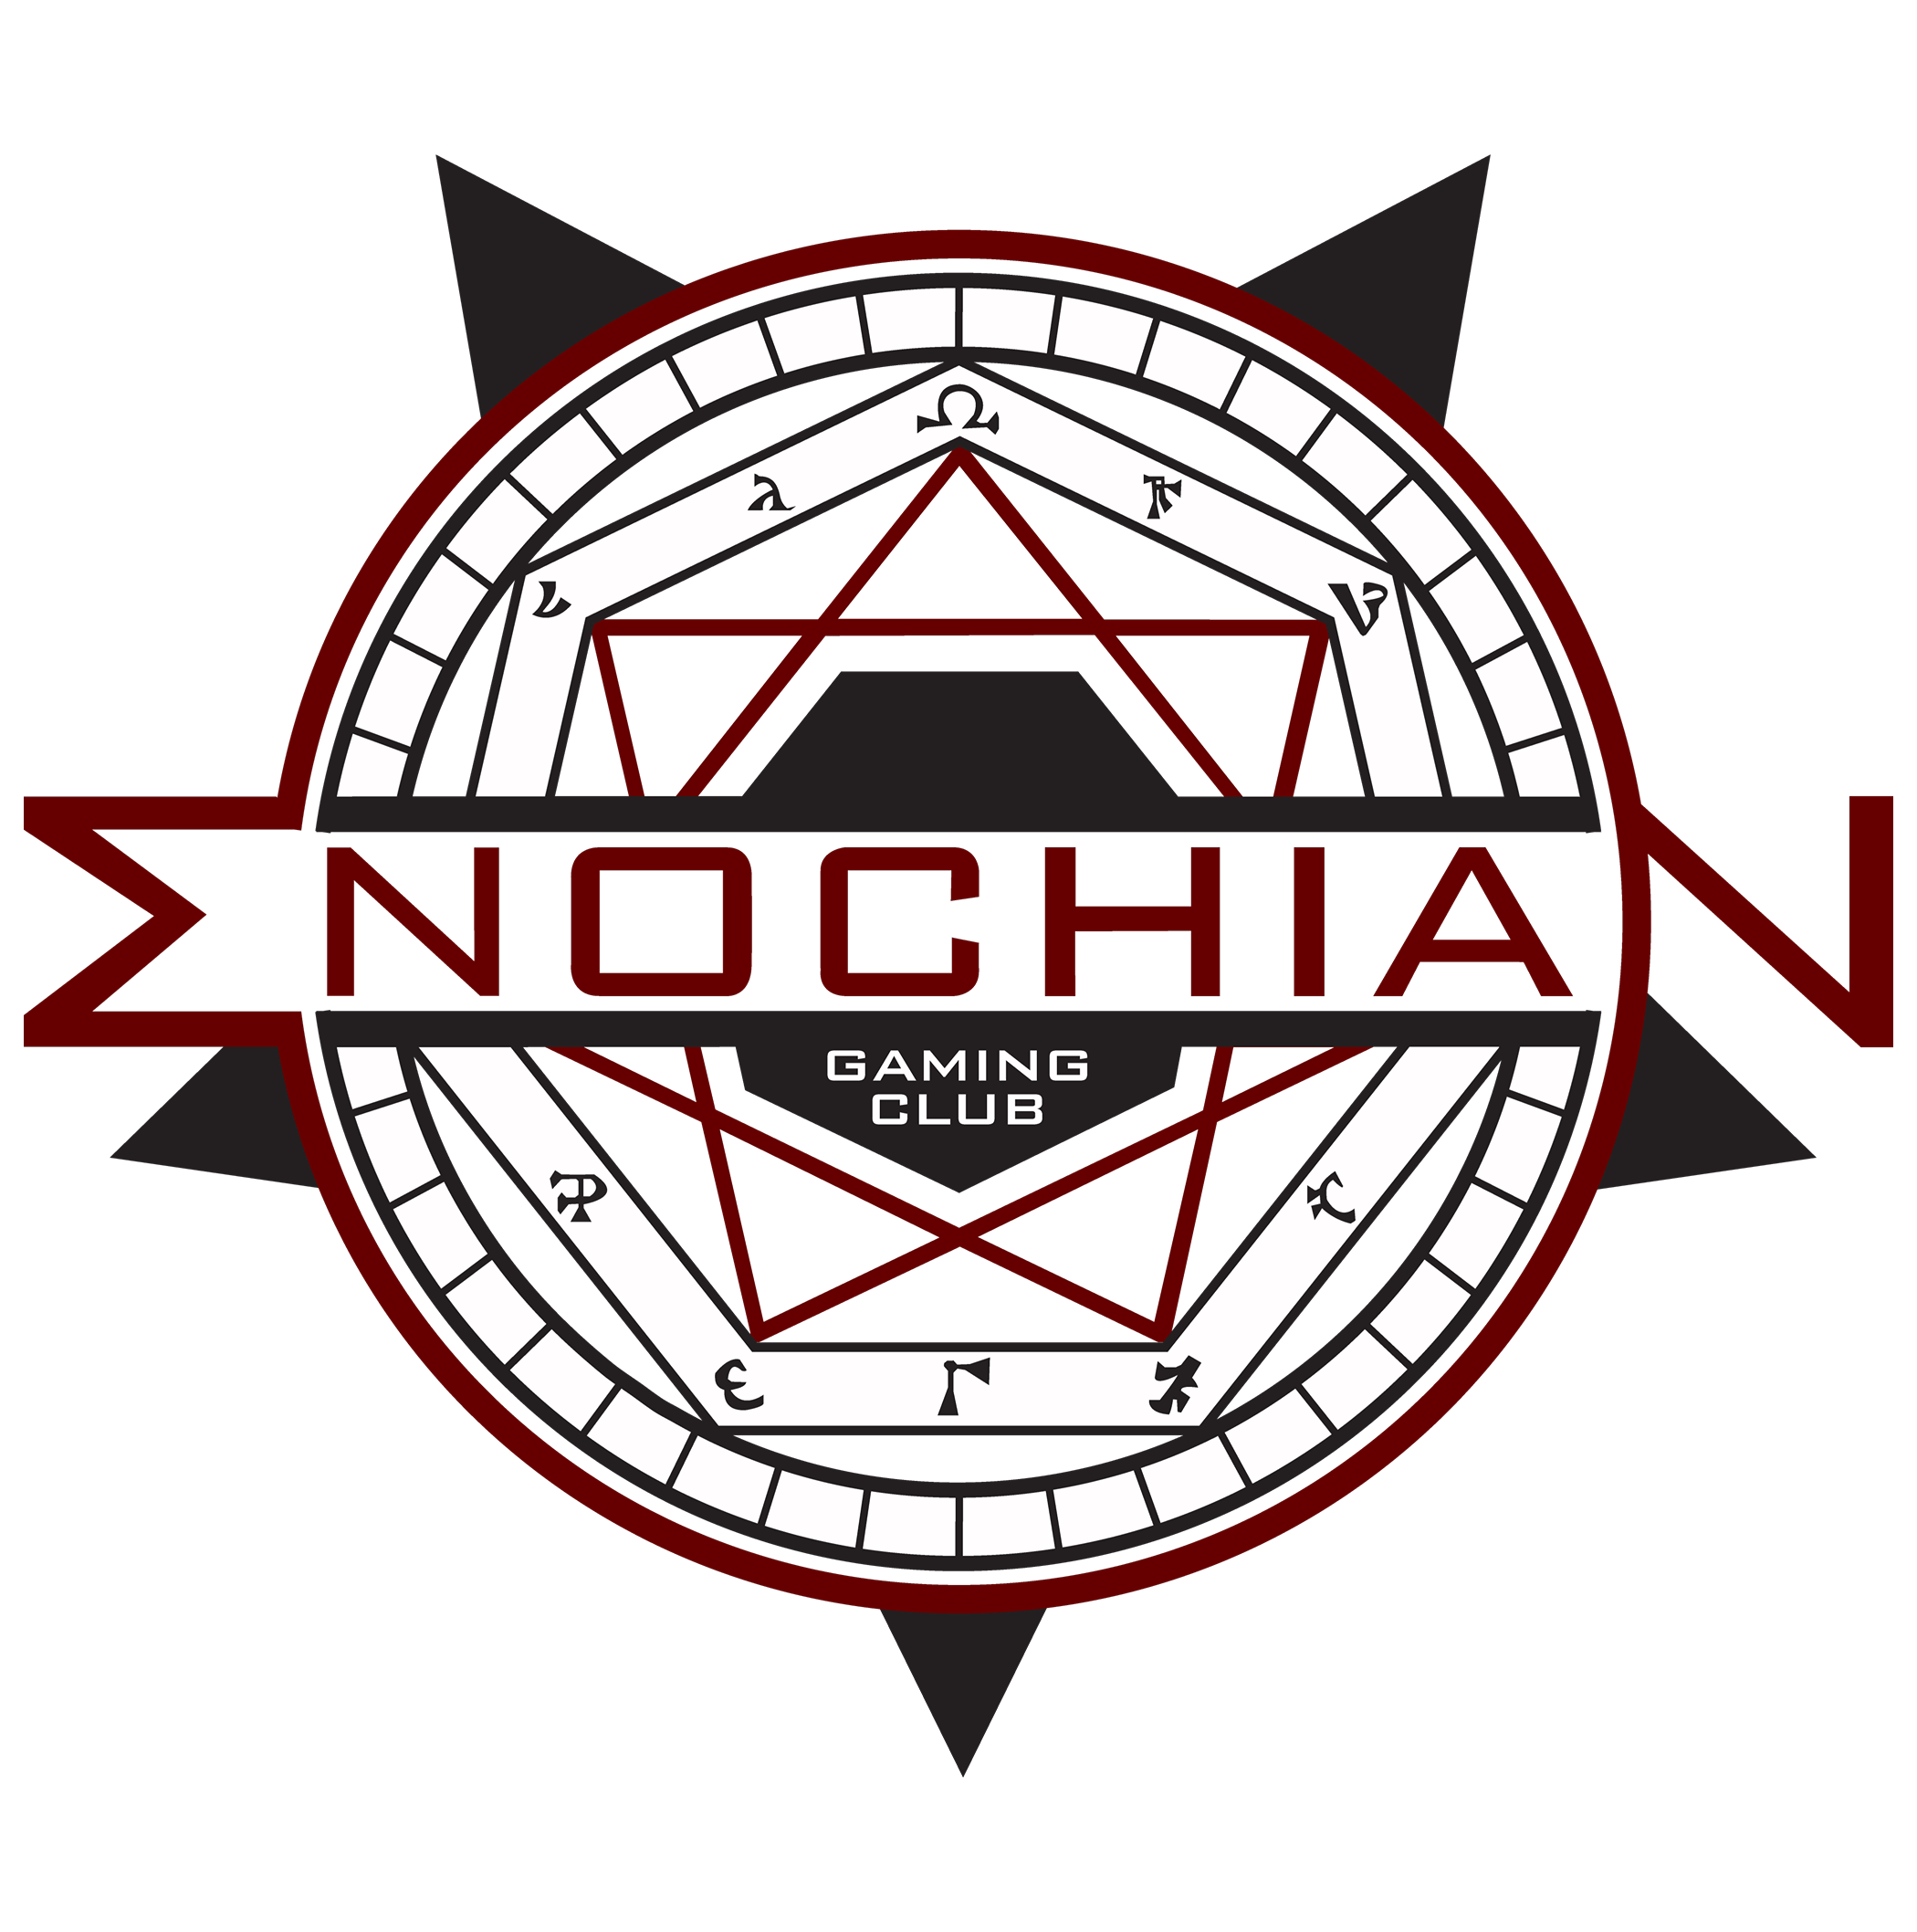 Enochian Gaming